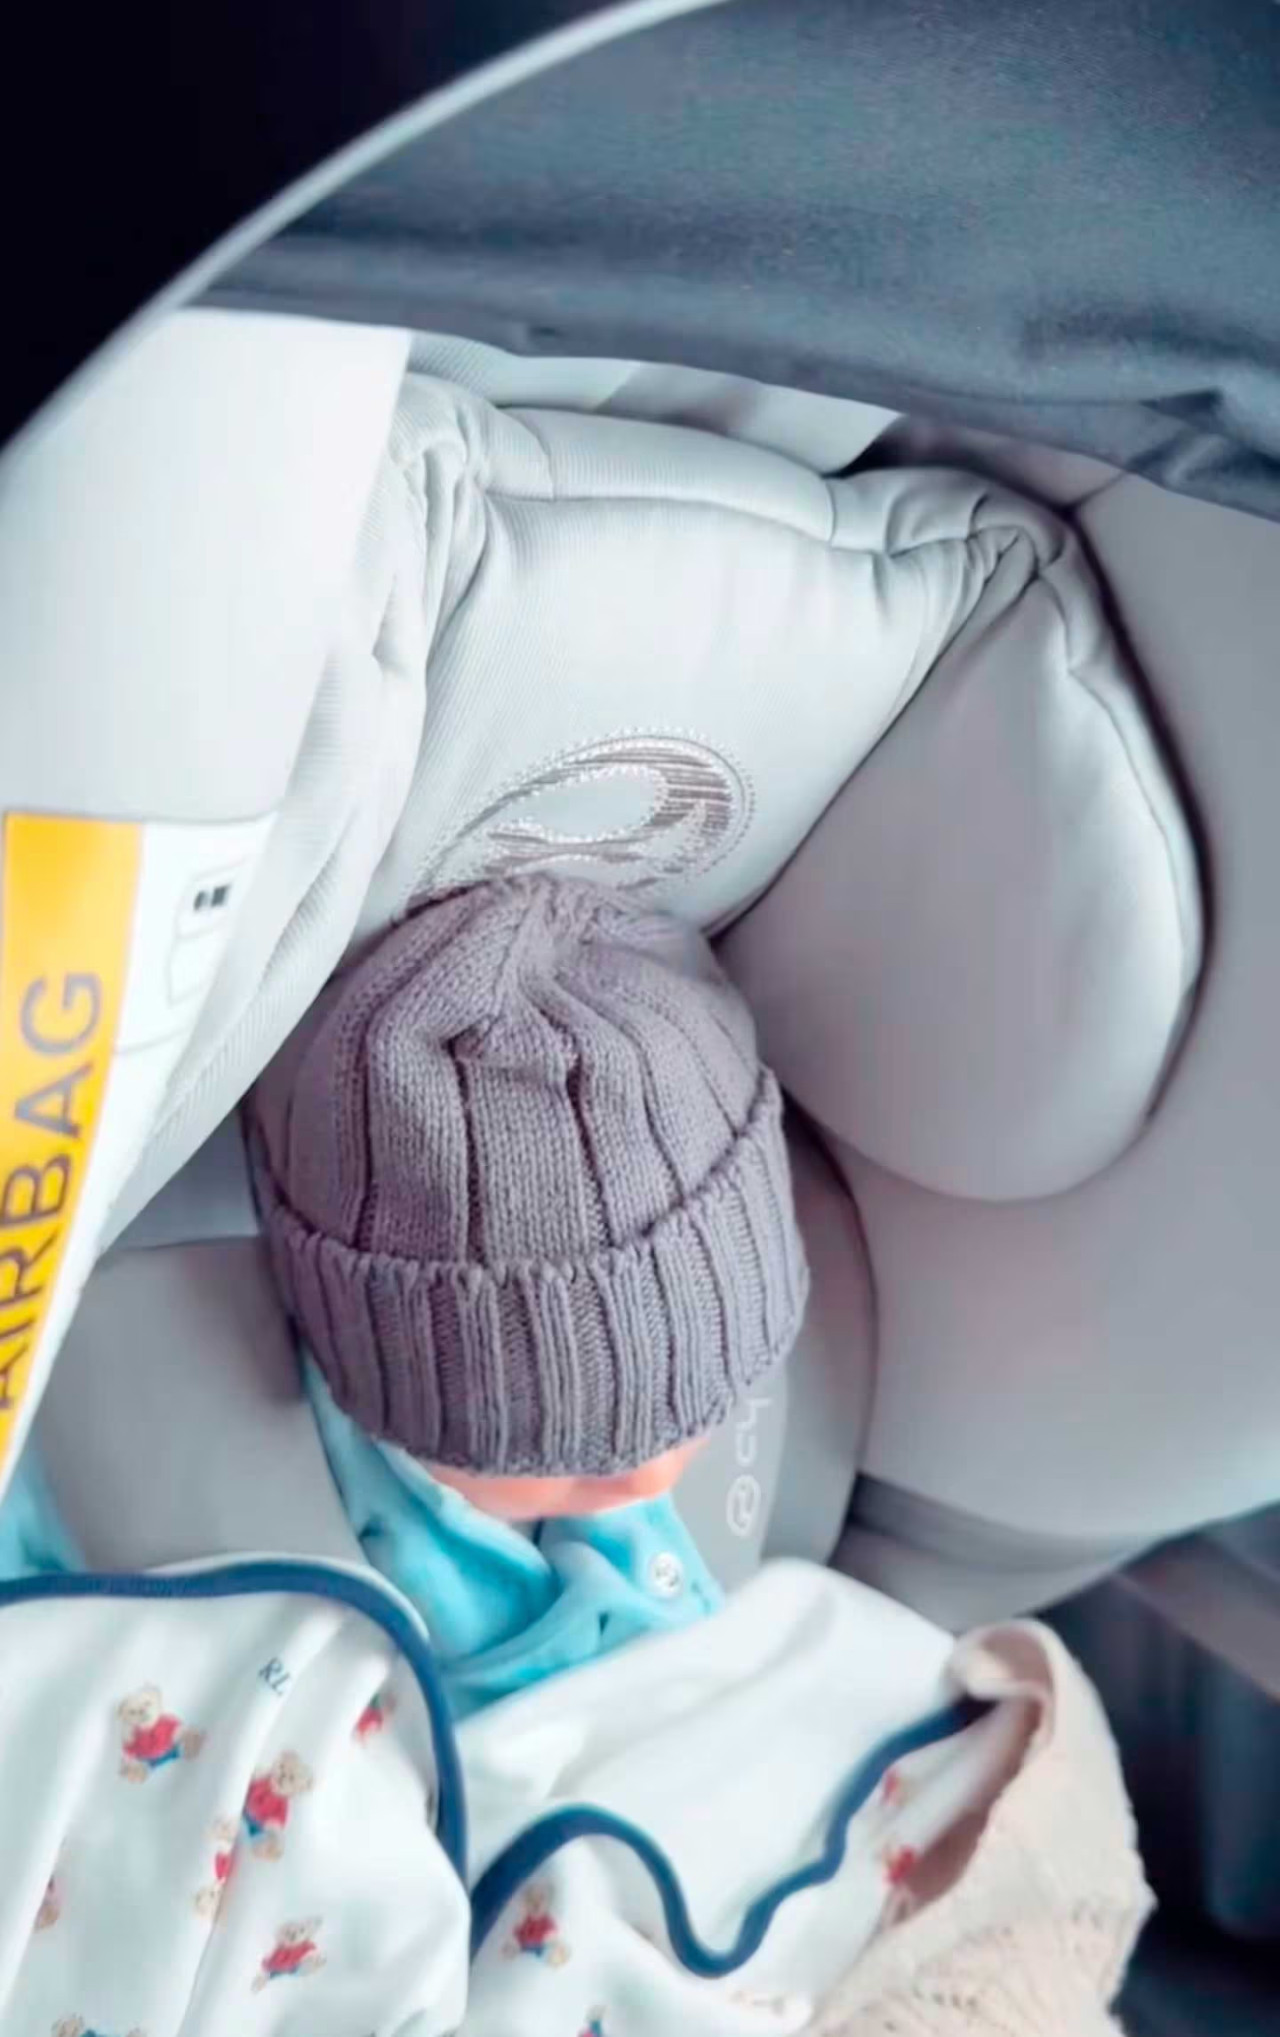 El look del bebé antes de ir al pediatra. Foto: Instagram.